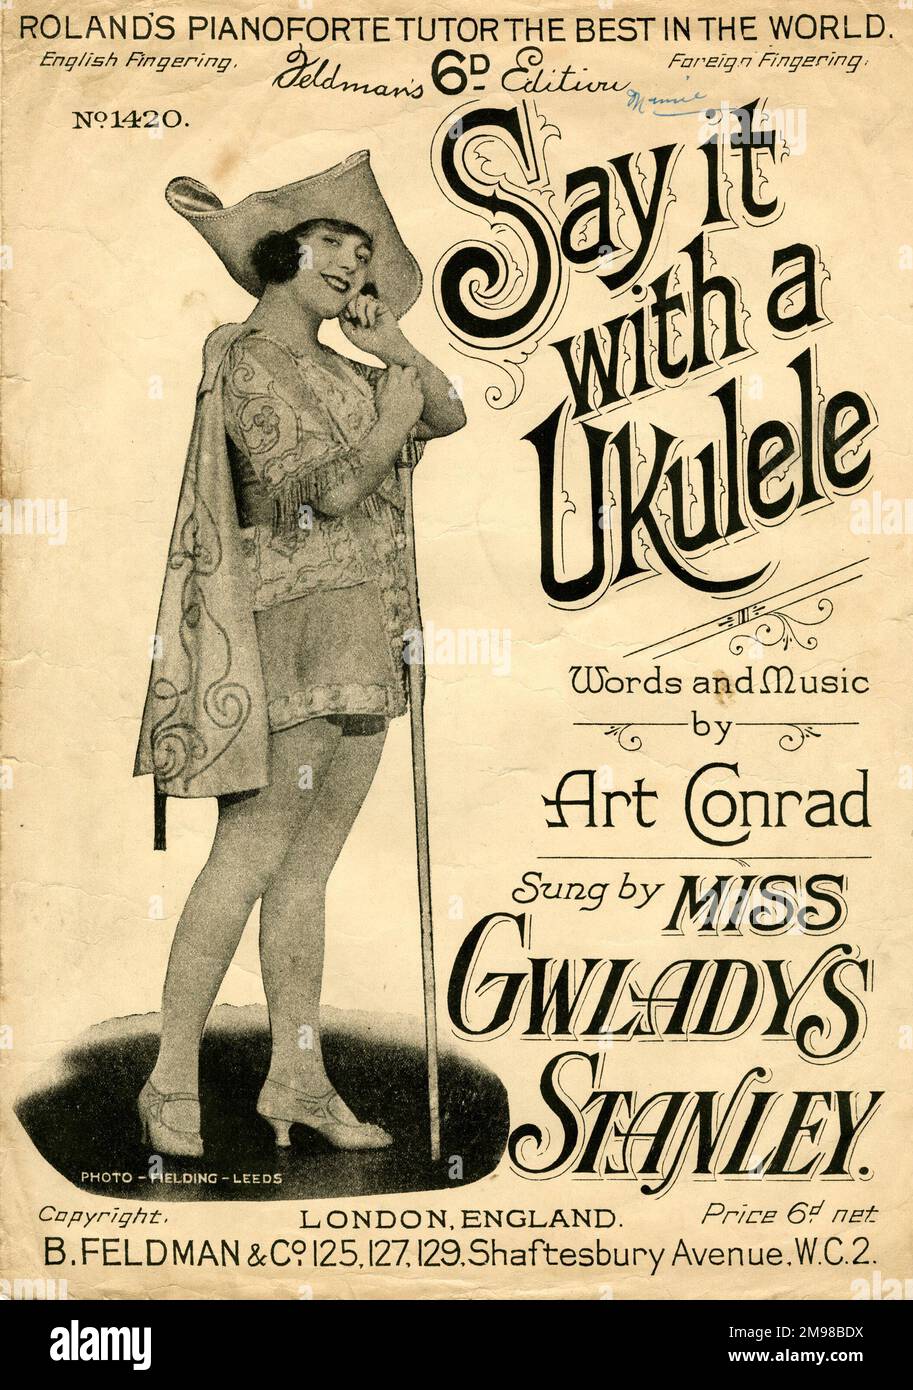 Musiktitel, "Sag es mit einer Ukulele", "Worte und Musik" von Art Conrad, gesungen von Miss Gwladys Stanley. Stockfoto